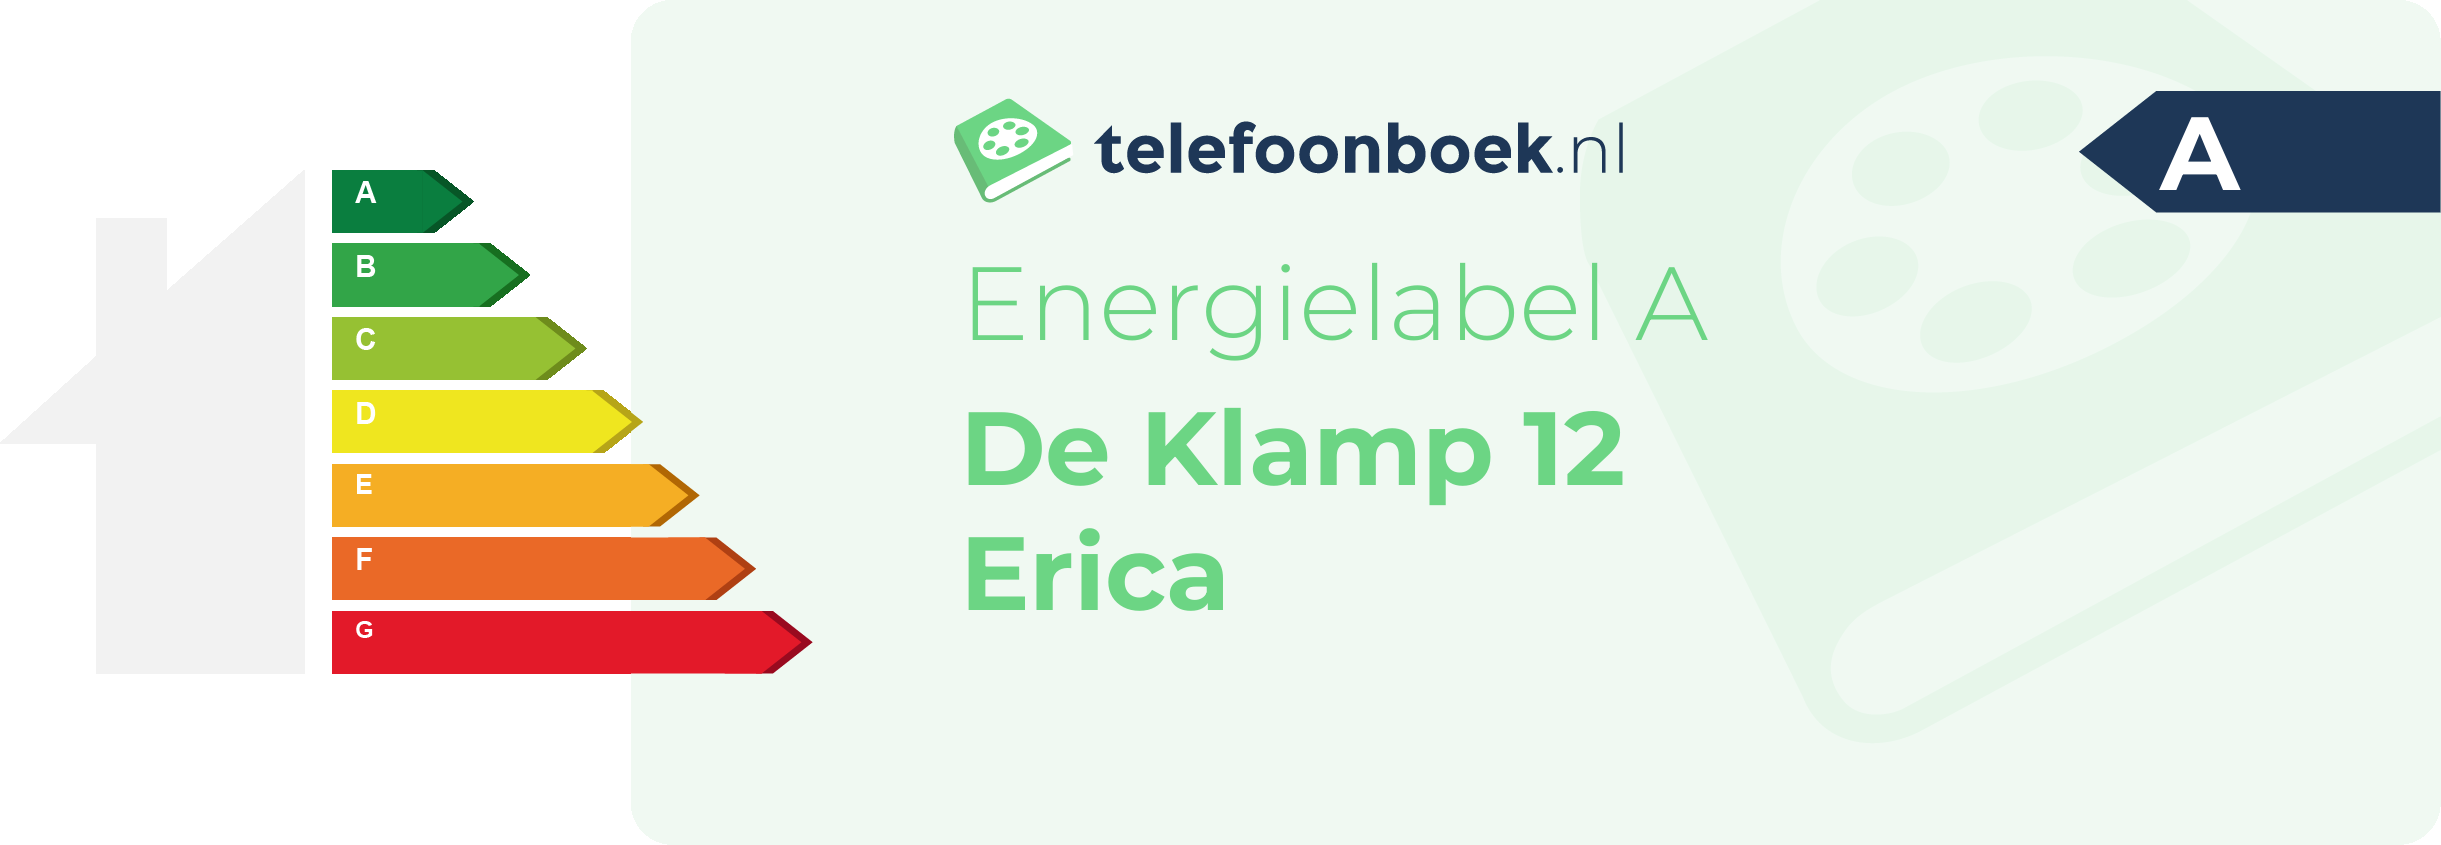 Energielabel De Klamp 12 Erica